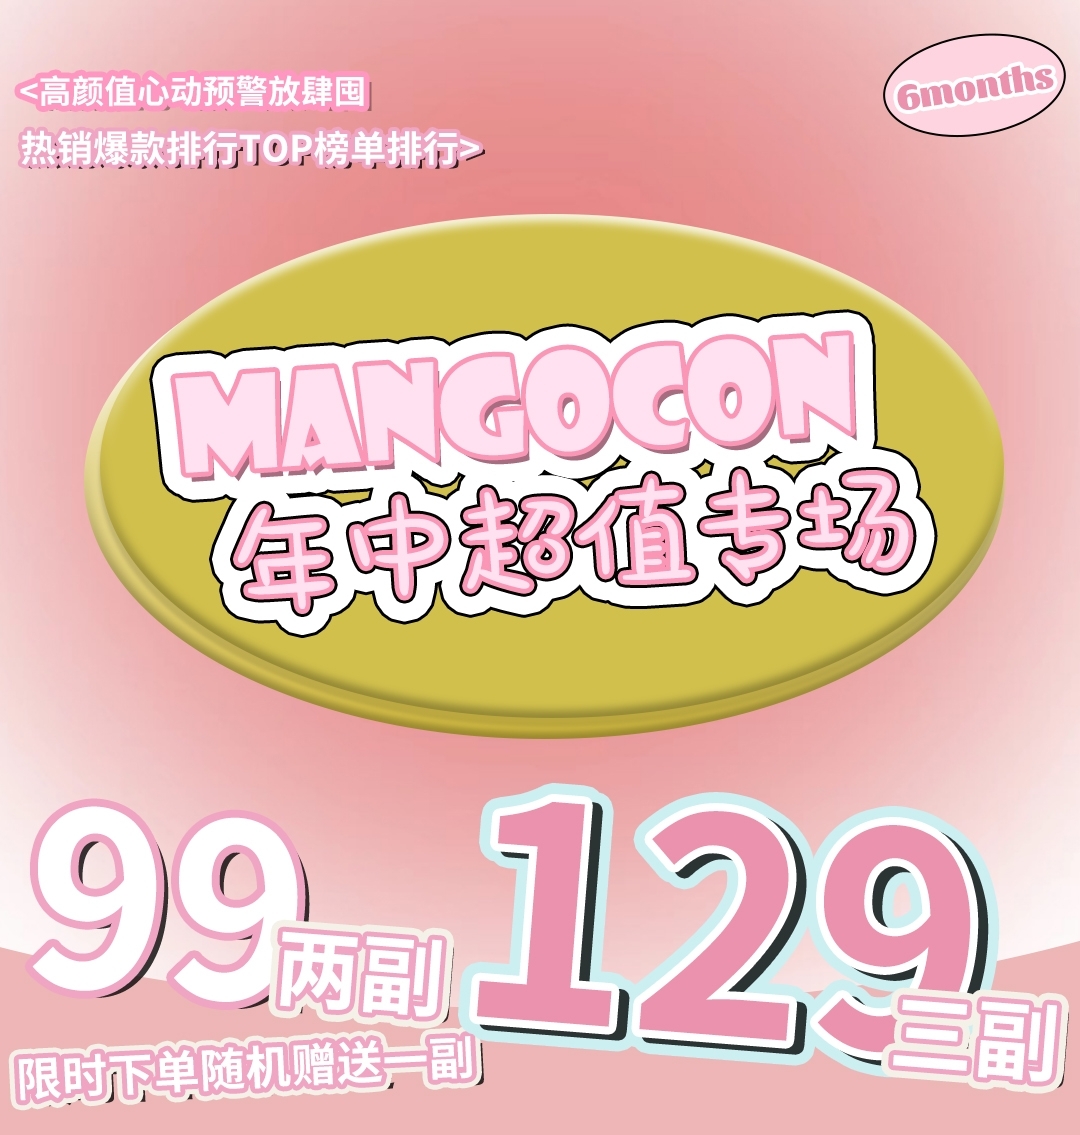 【半年抛】MANGOCON 年中超值专场